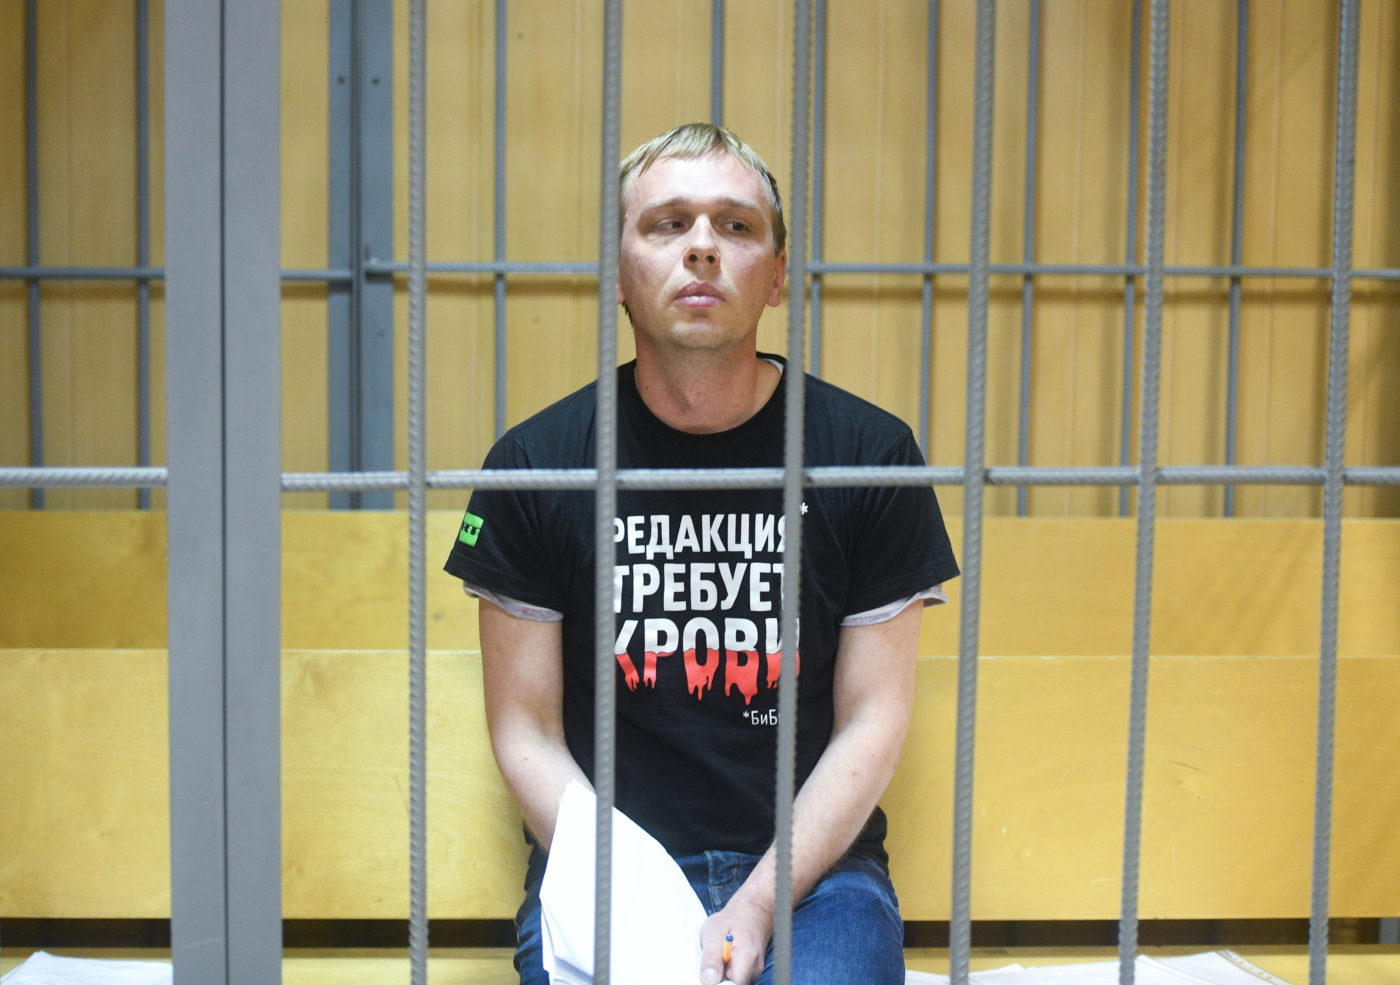 Házi őrizetben az orosz újságíró